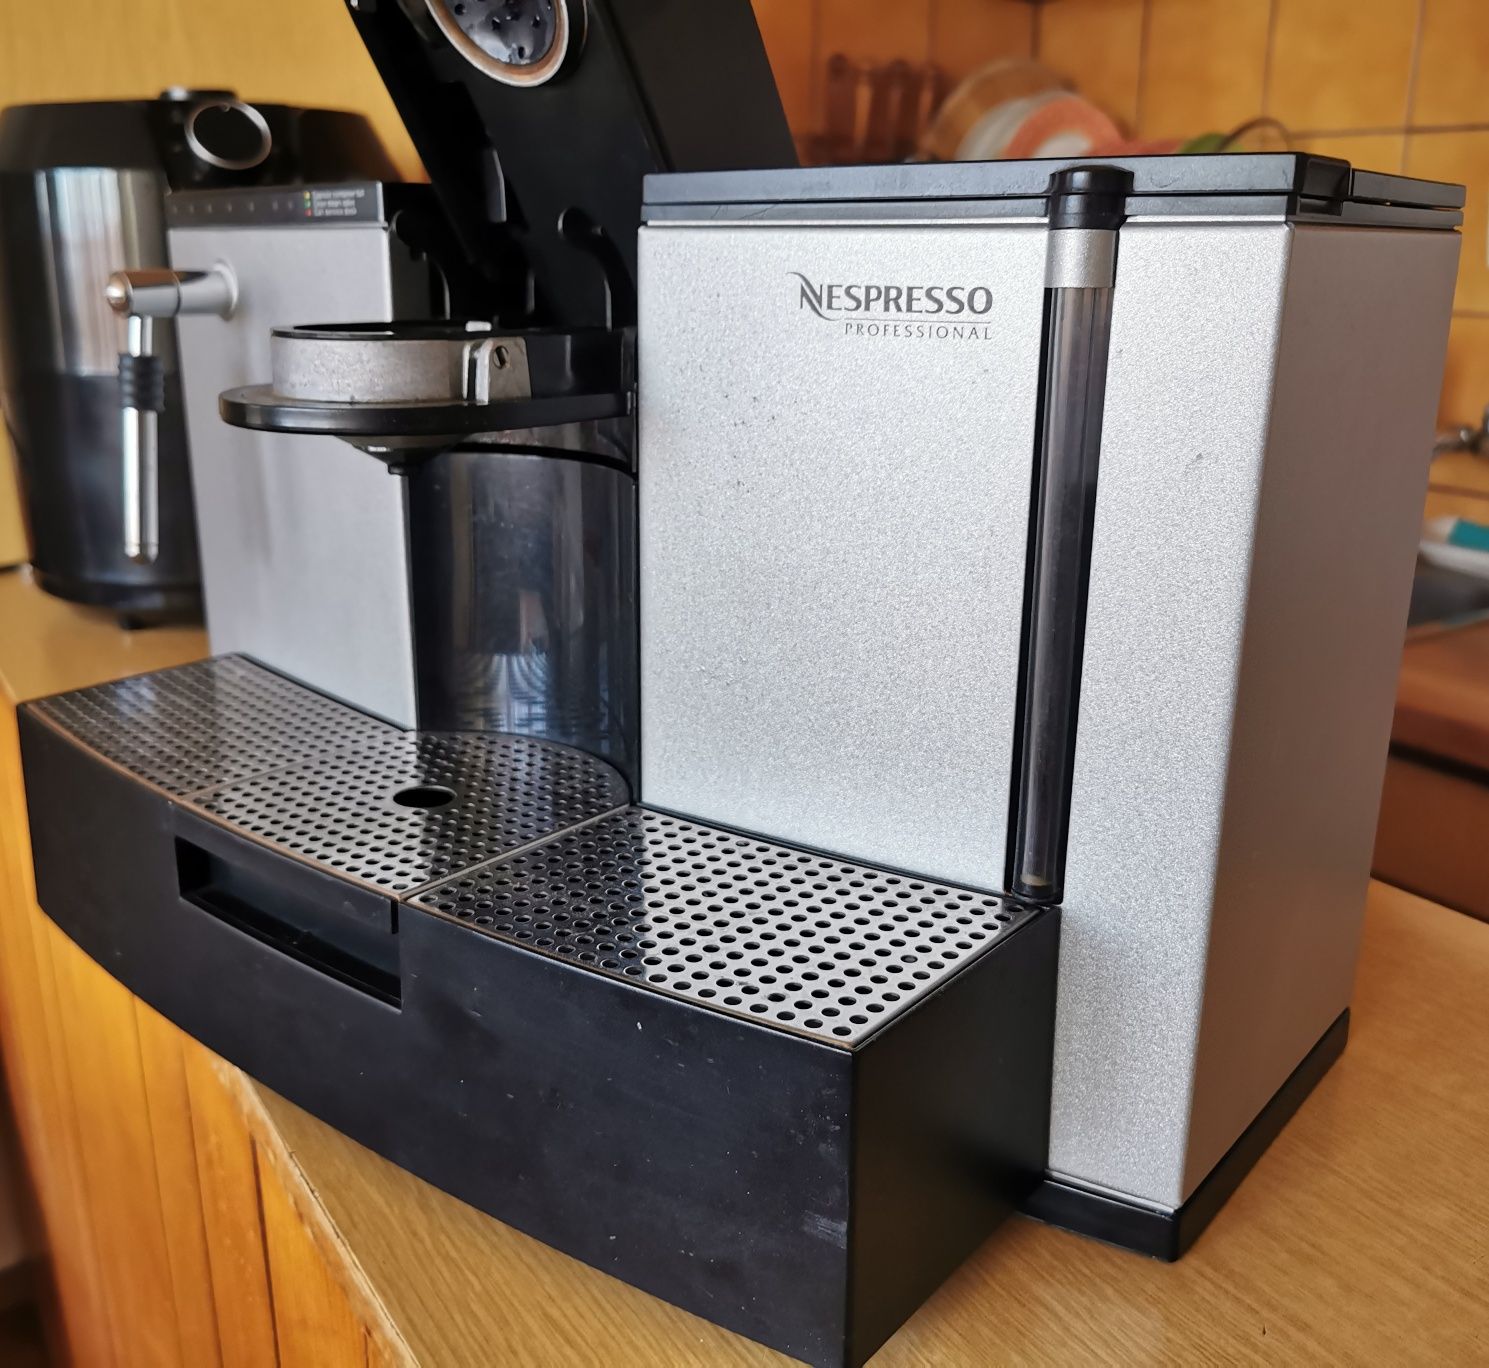 Nespresso Profesional ES100 Pro Type 758